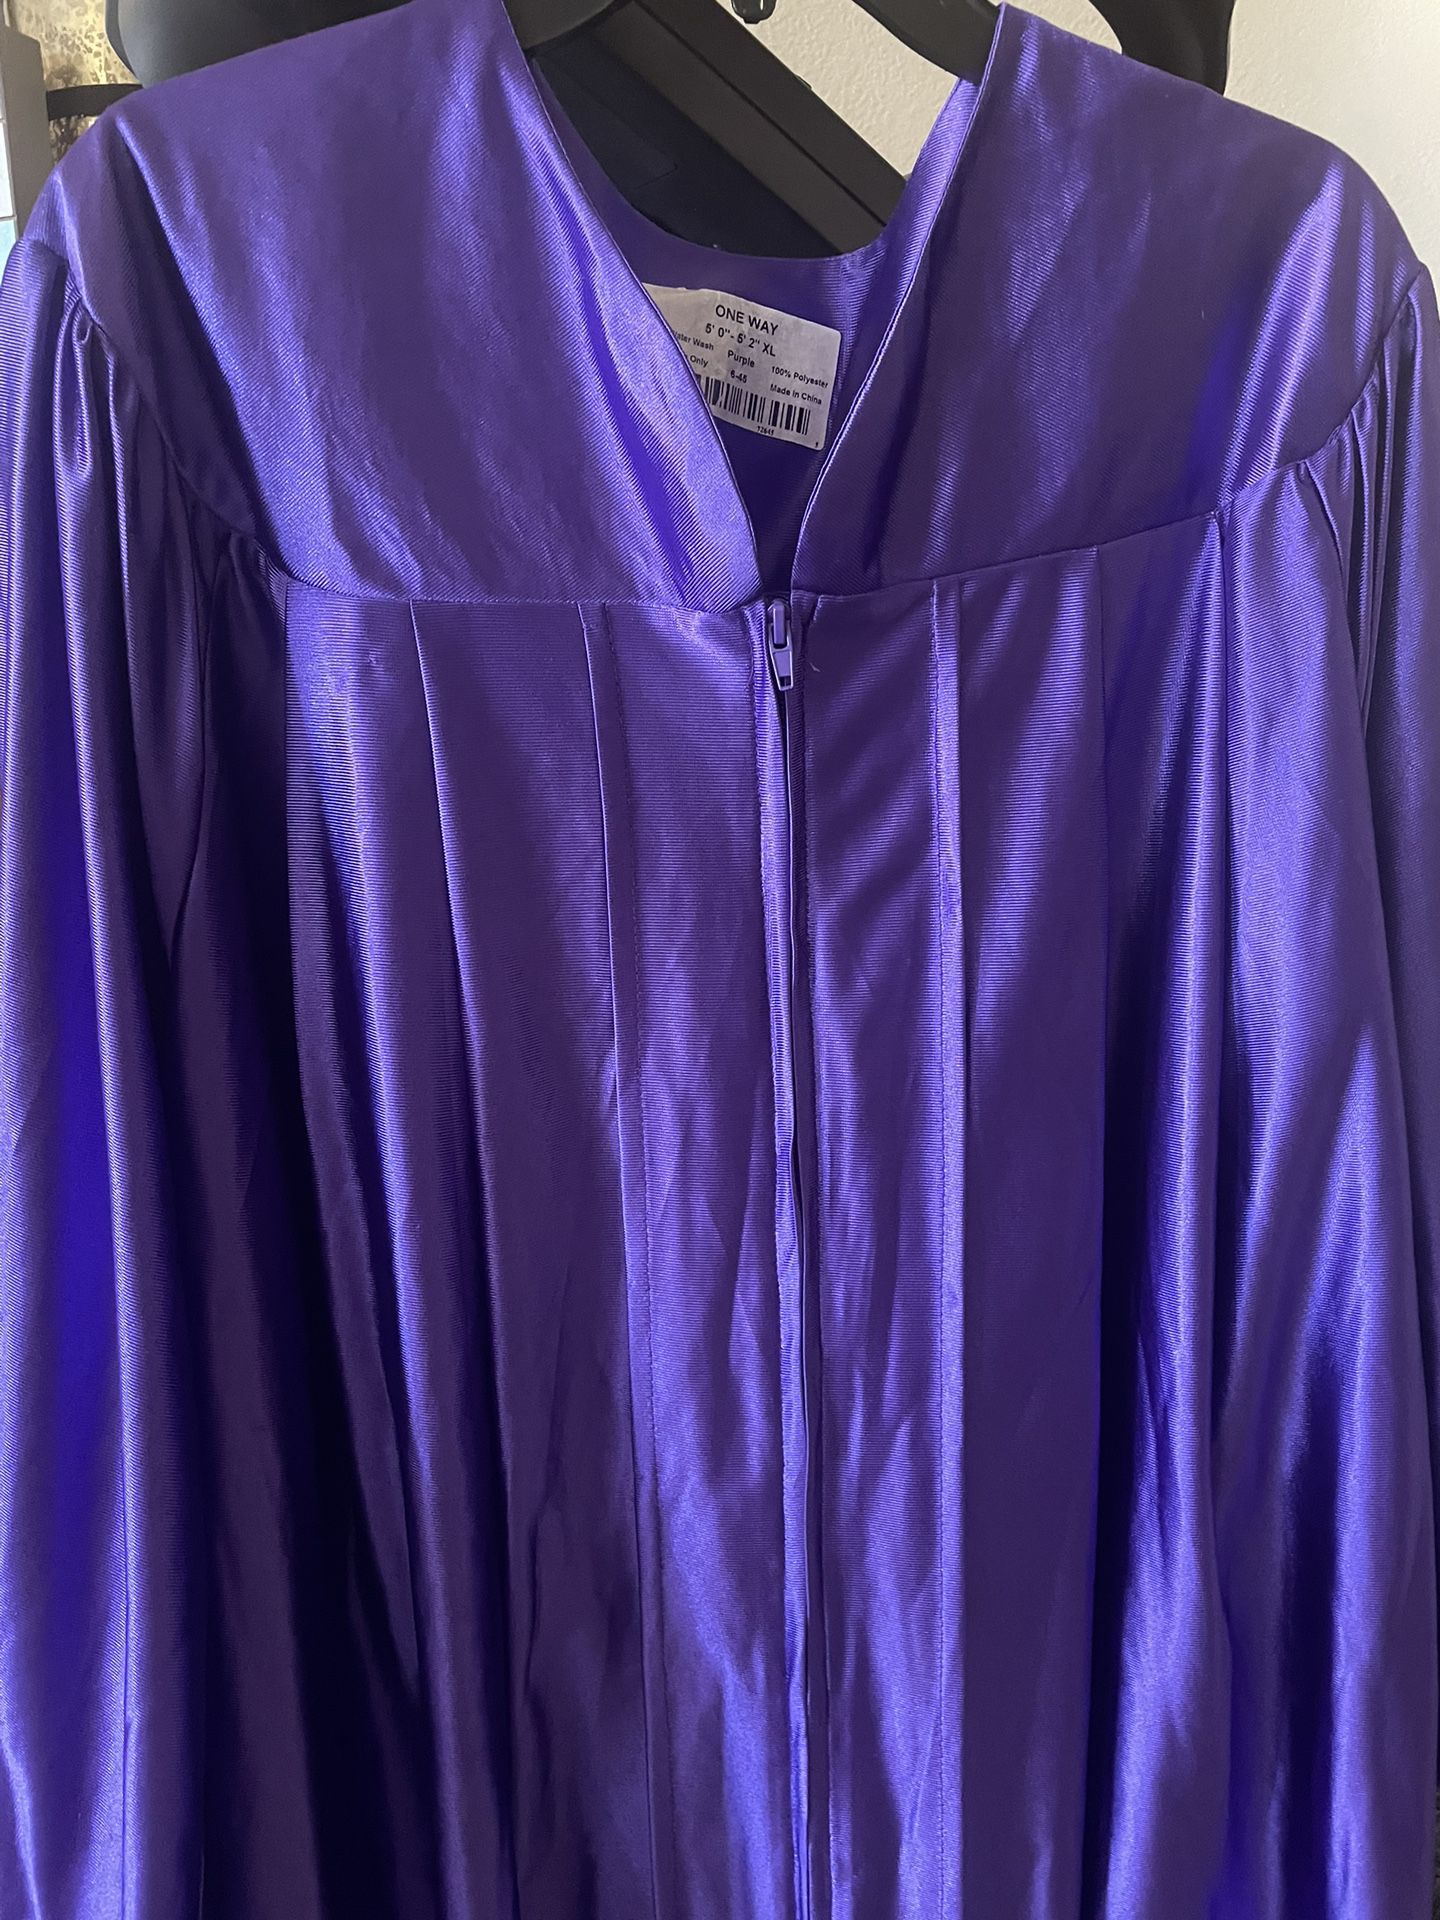 Purple Graduation Gown